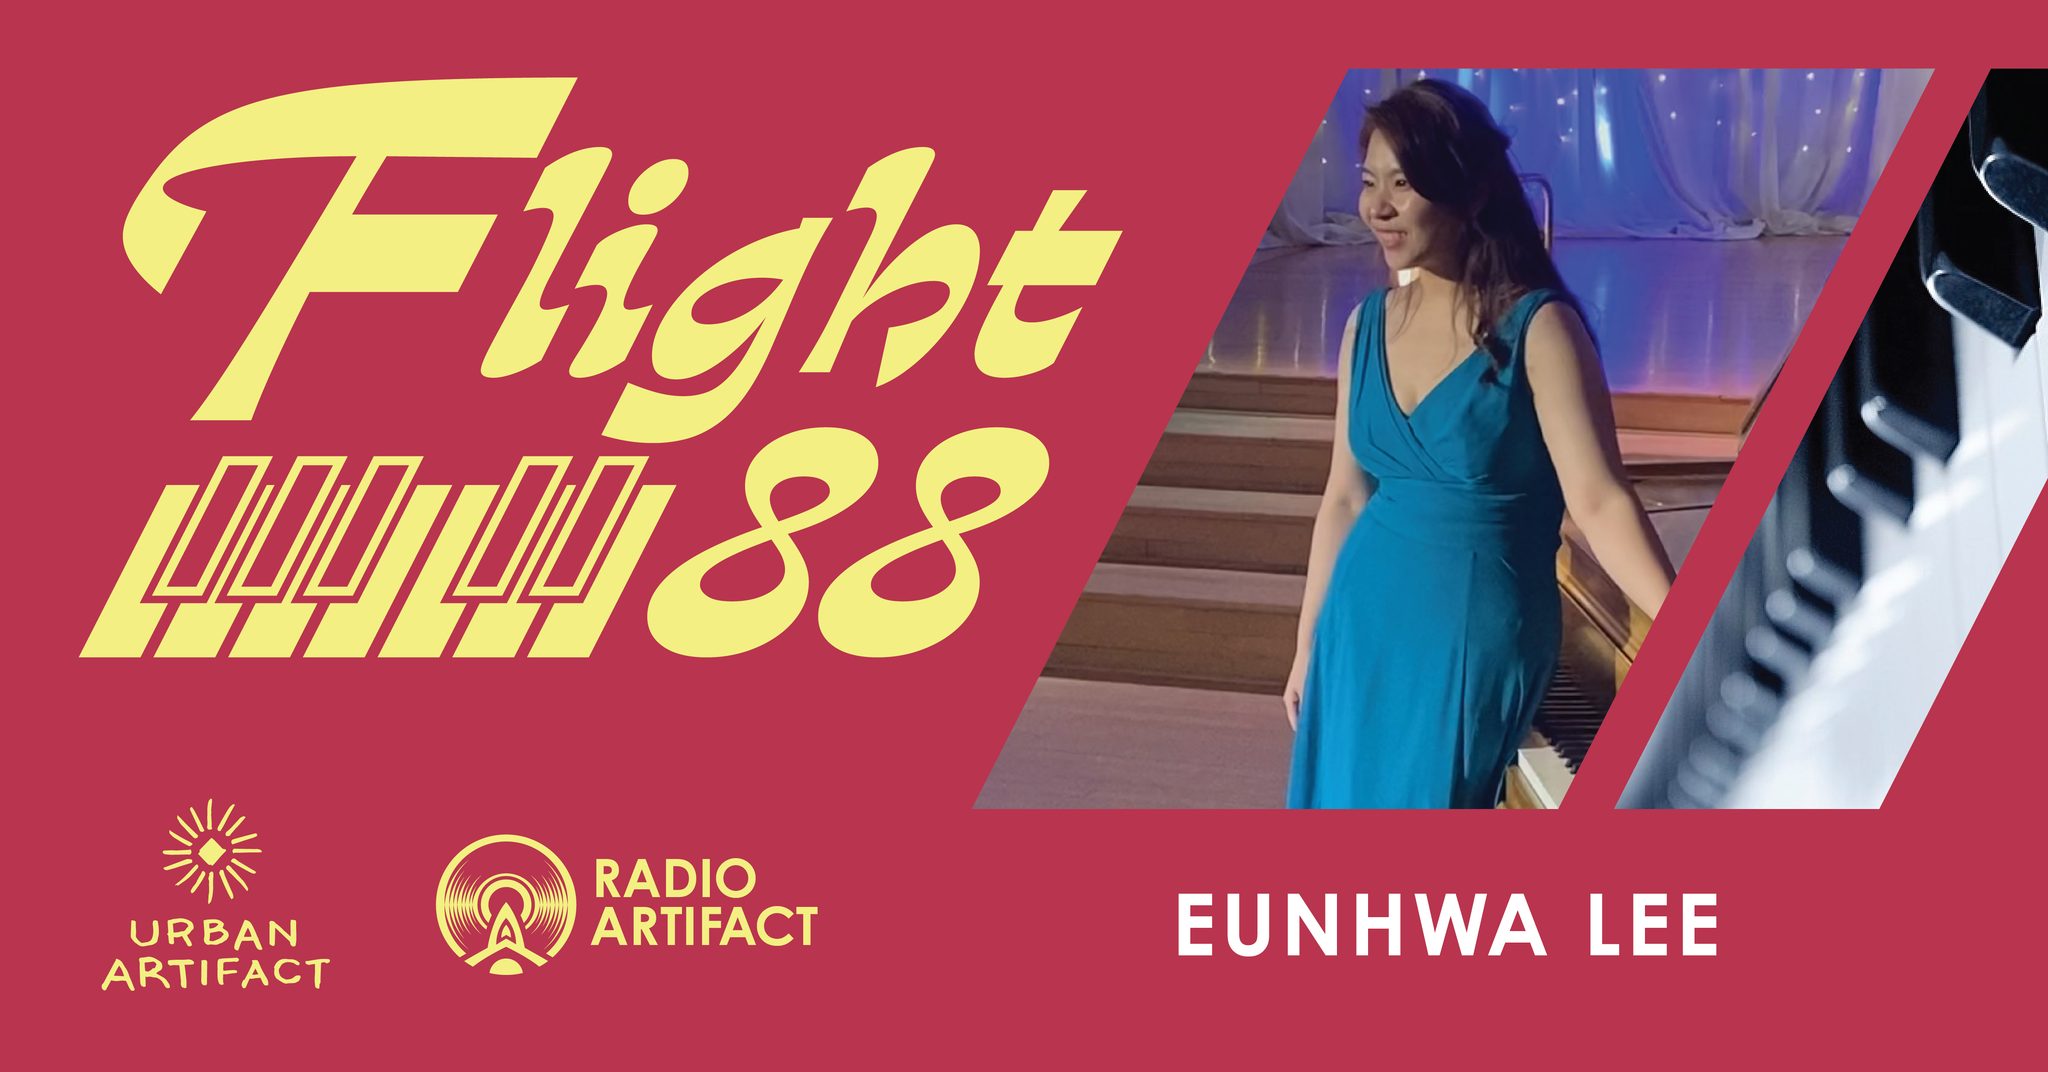 Eunhwa Lee Flight 88 at Urban Artifact